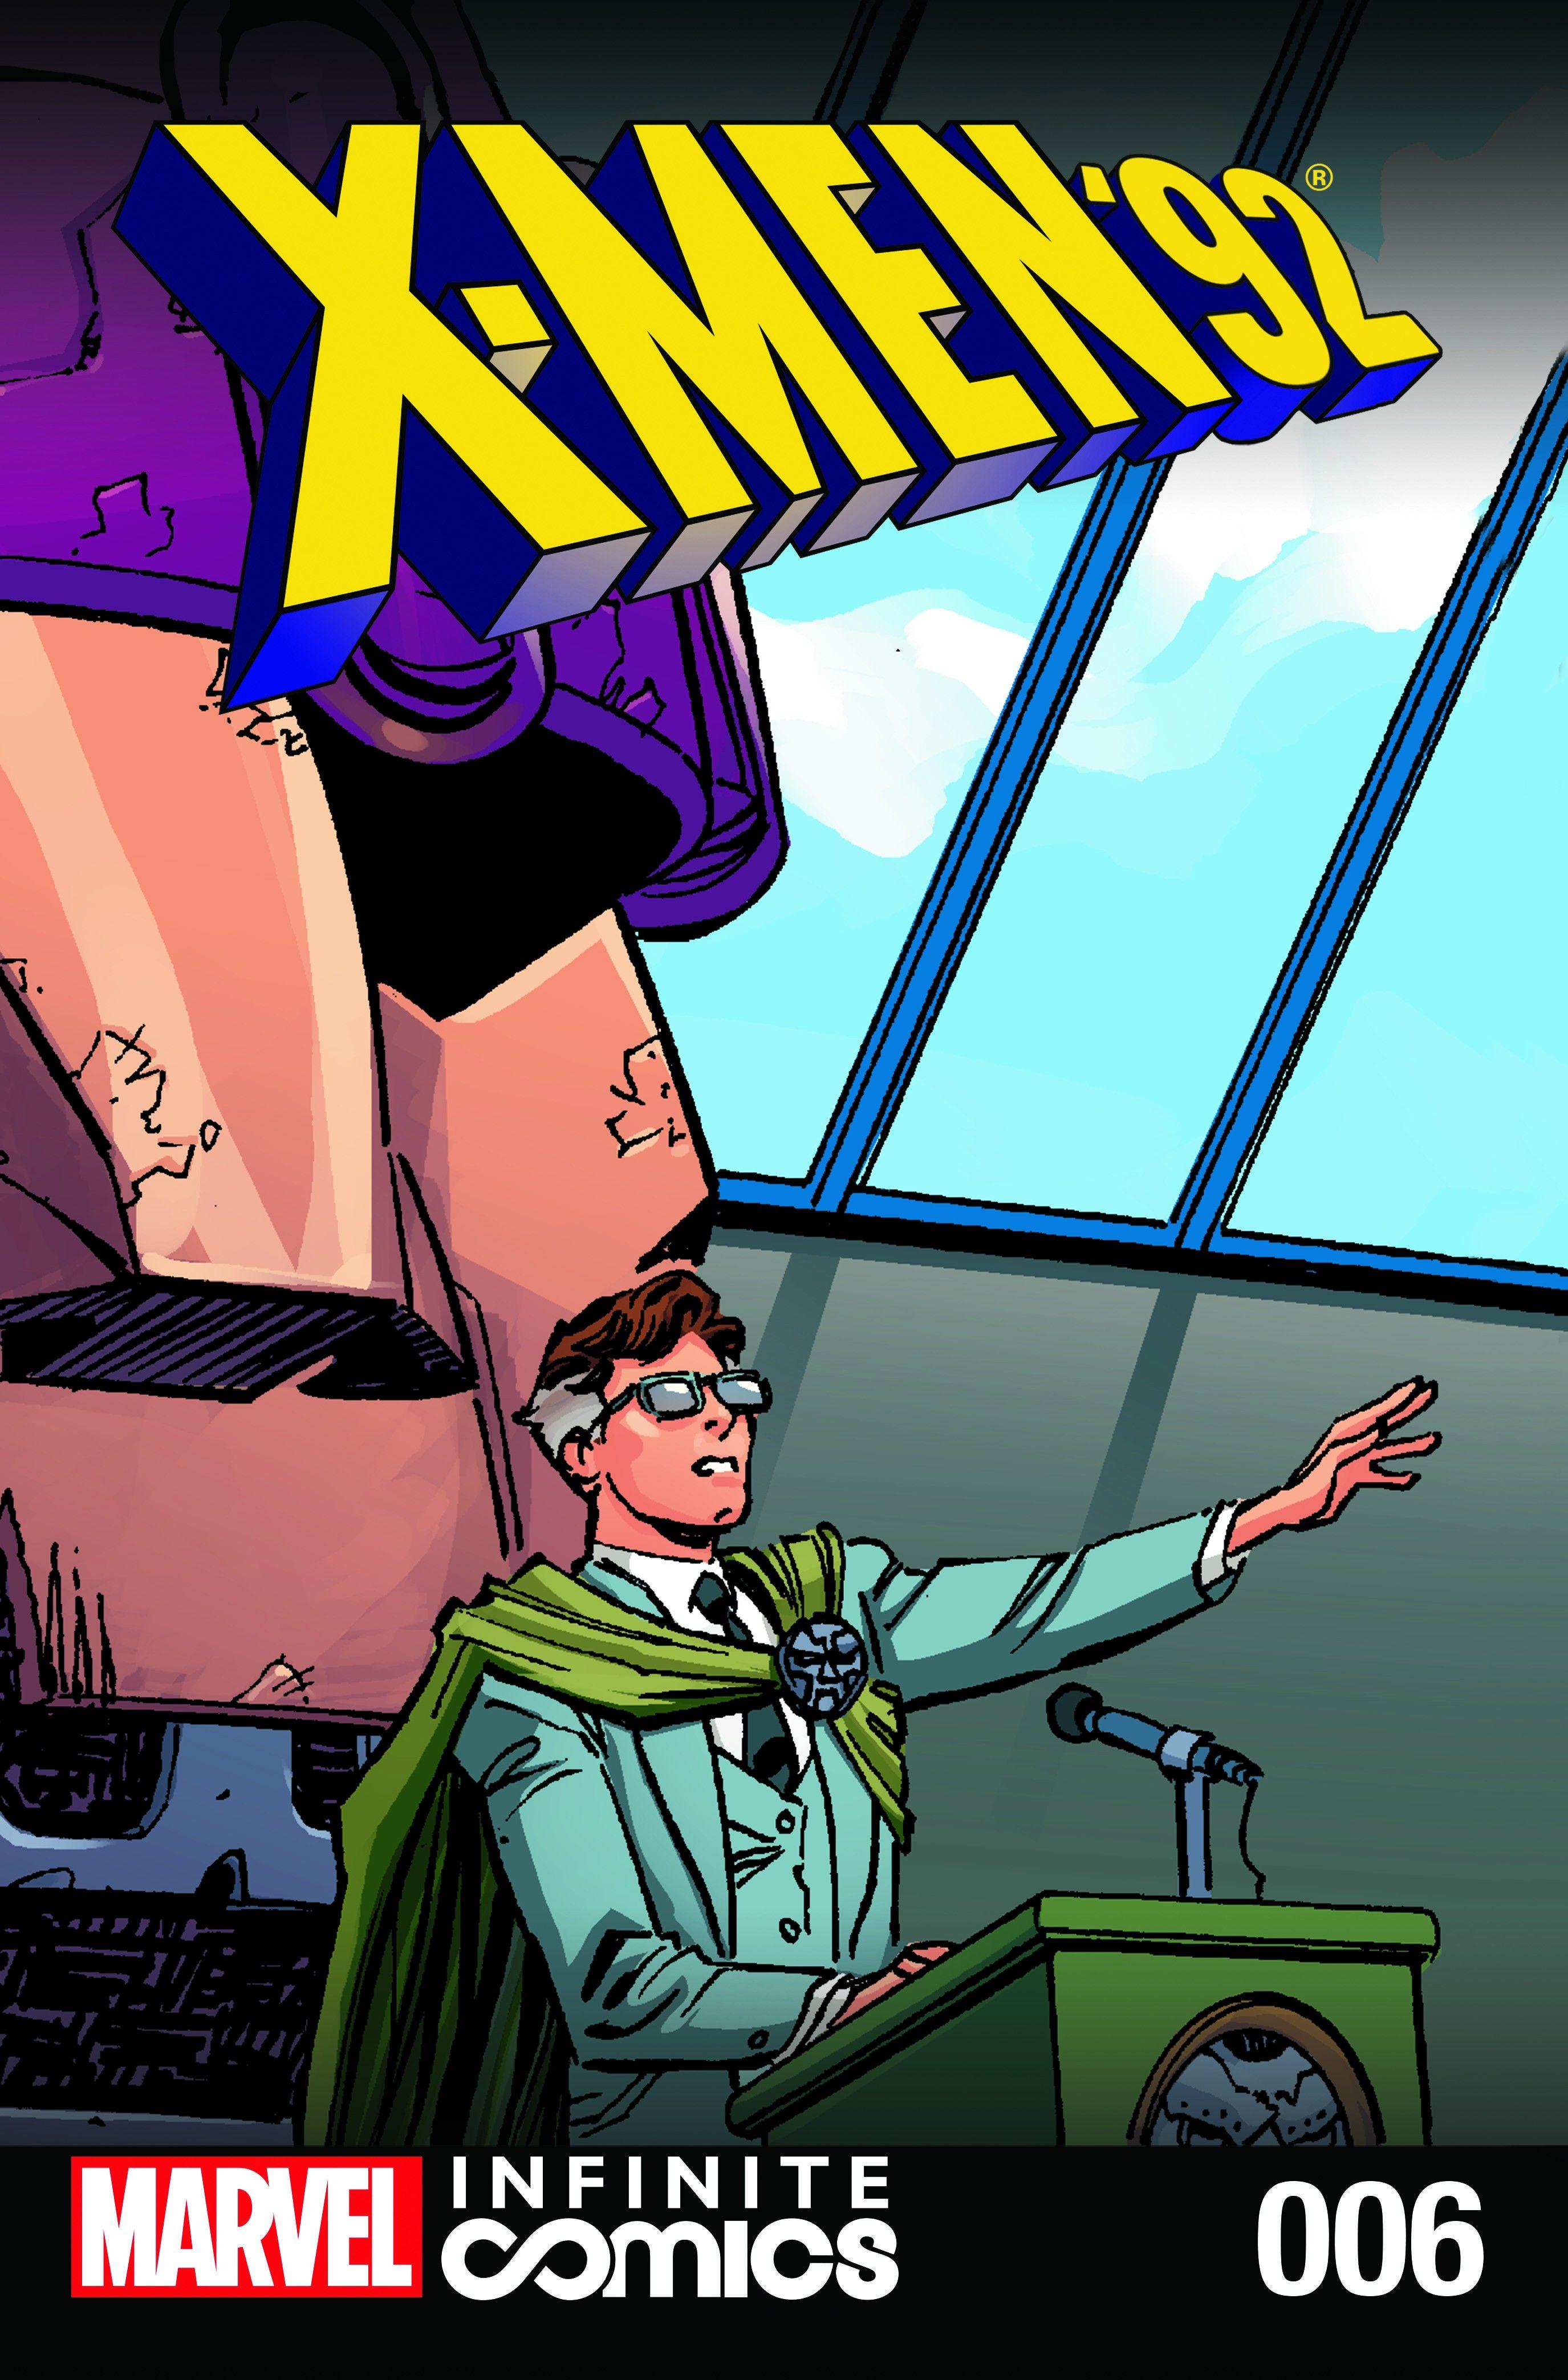 X-Men '92 Infinite Comic Vol. 1 #6